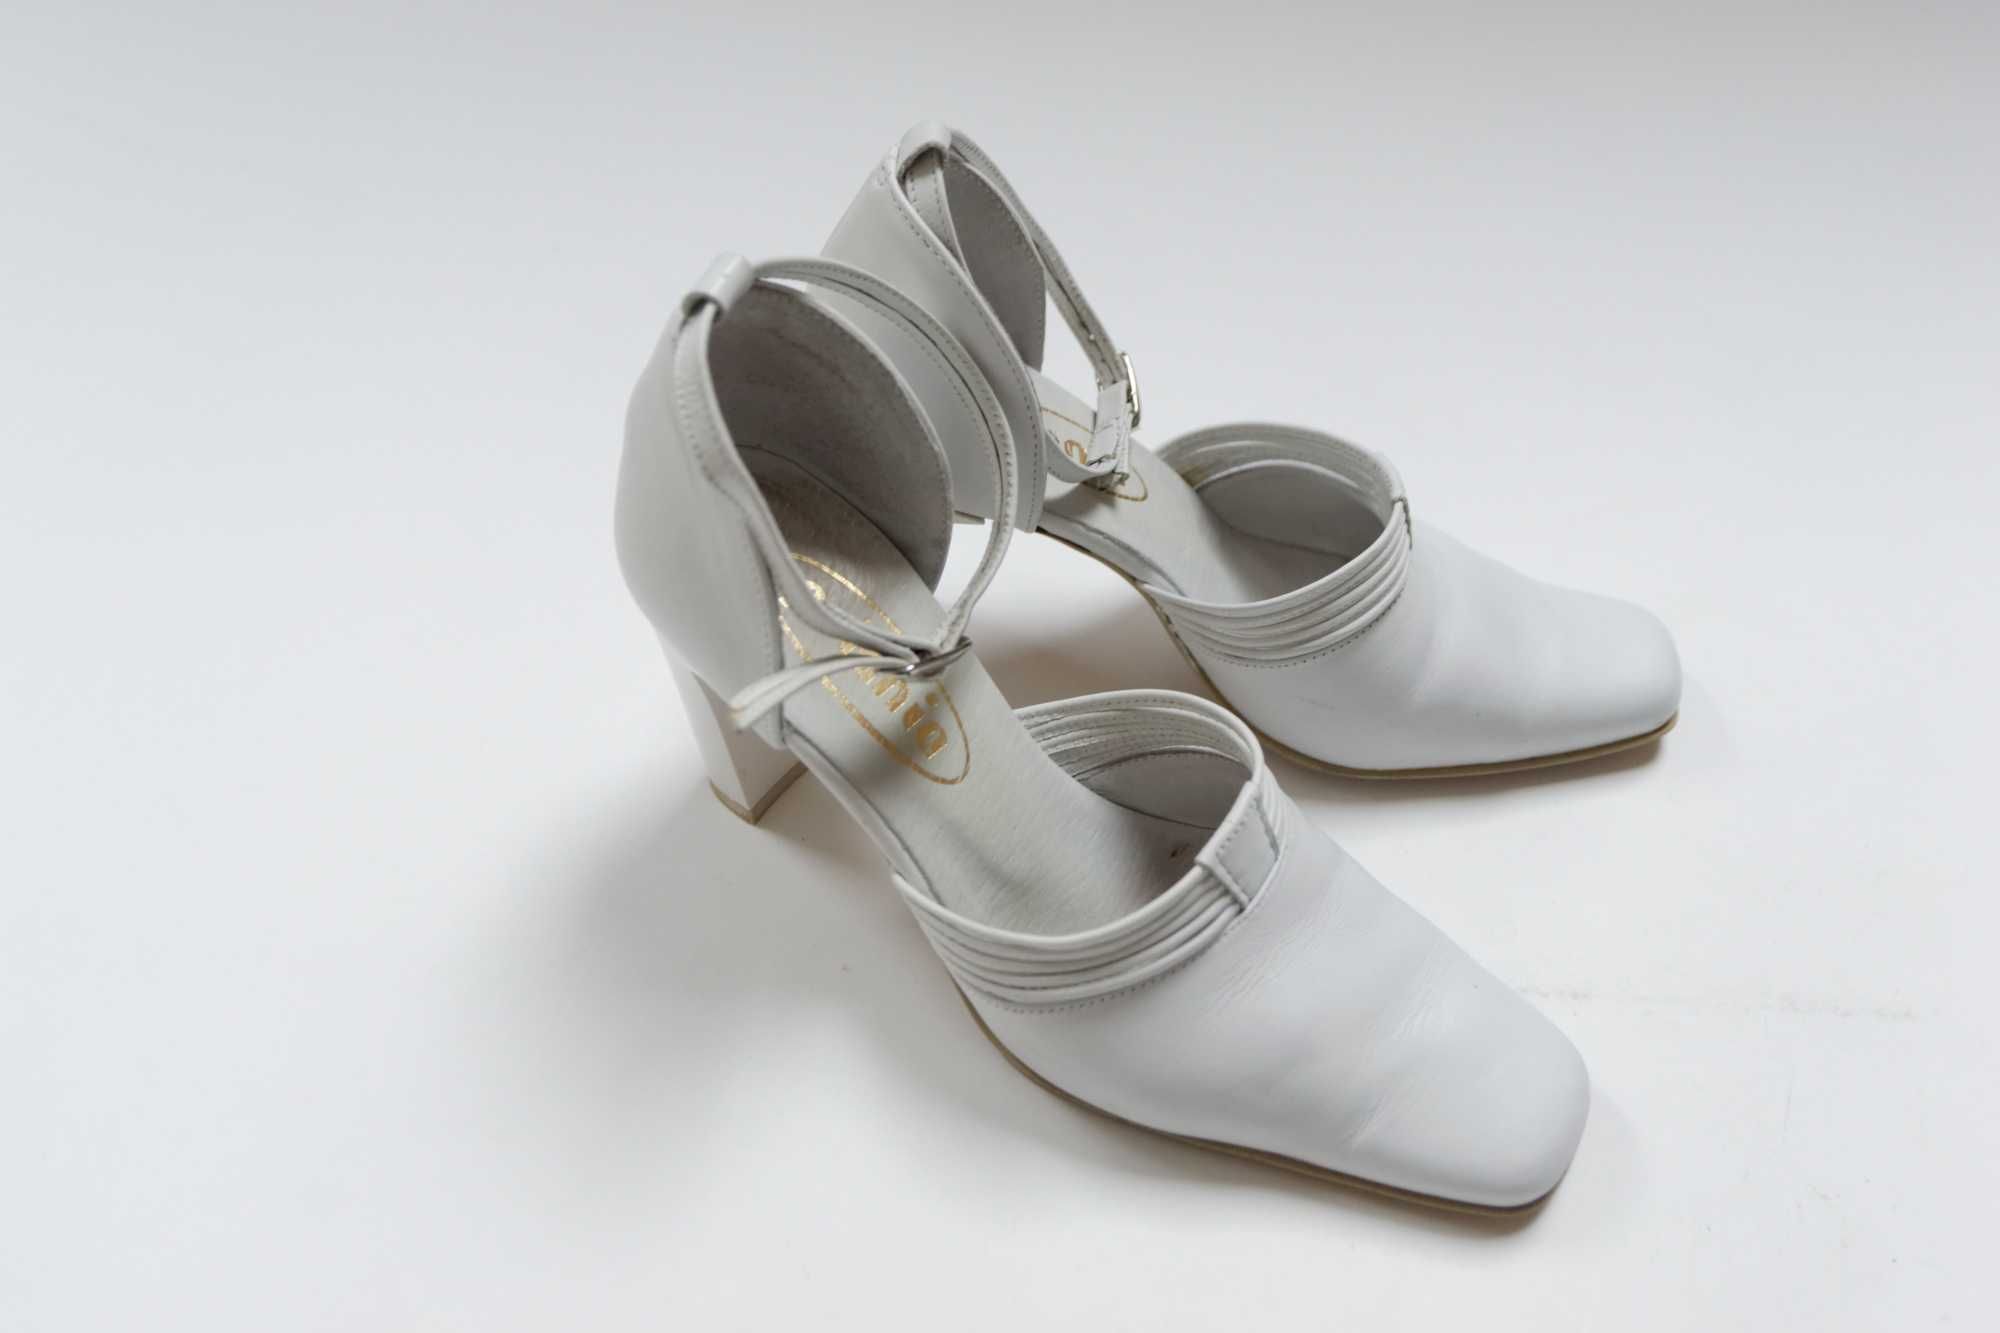 białe buty skóra polska produkcja jak NOWE 39